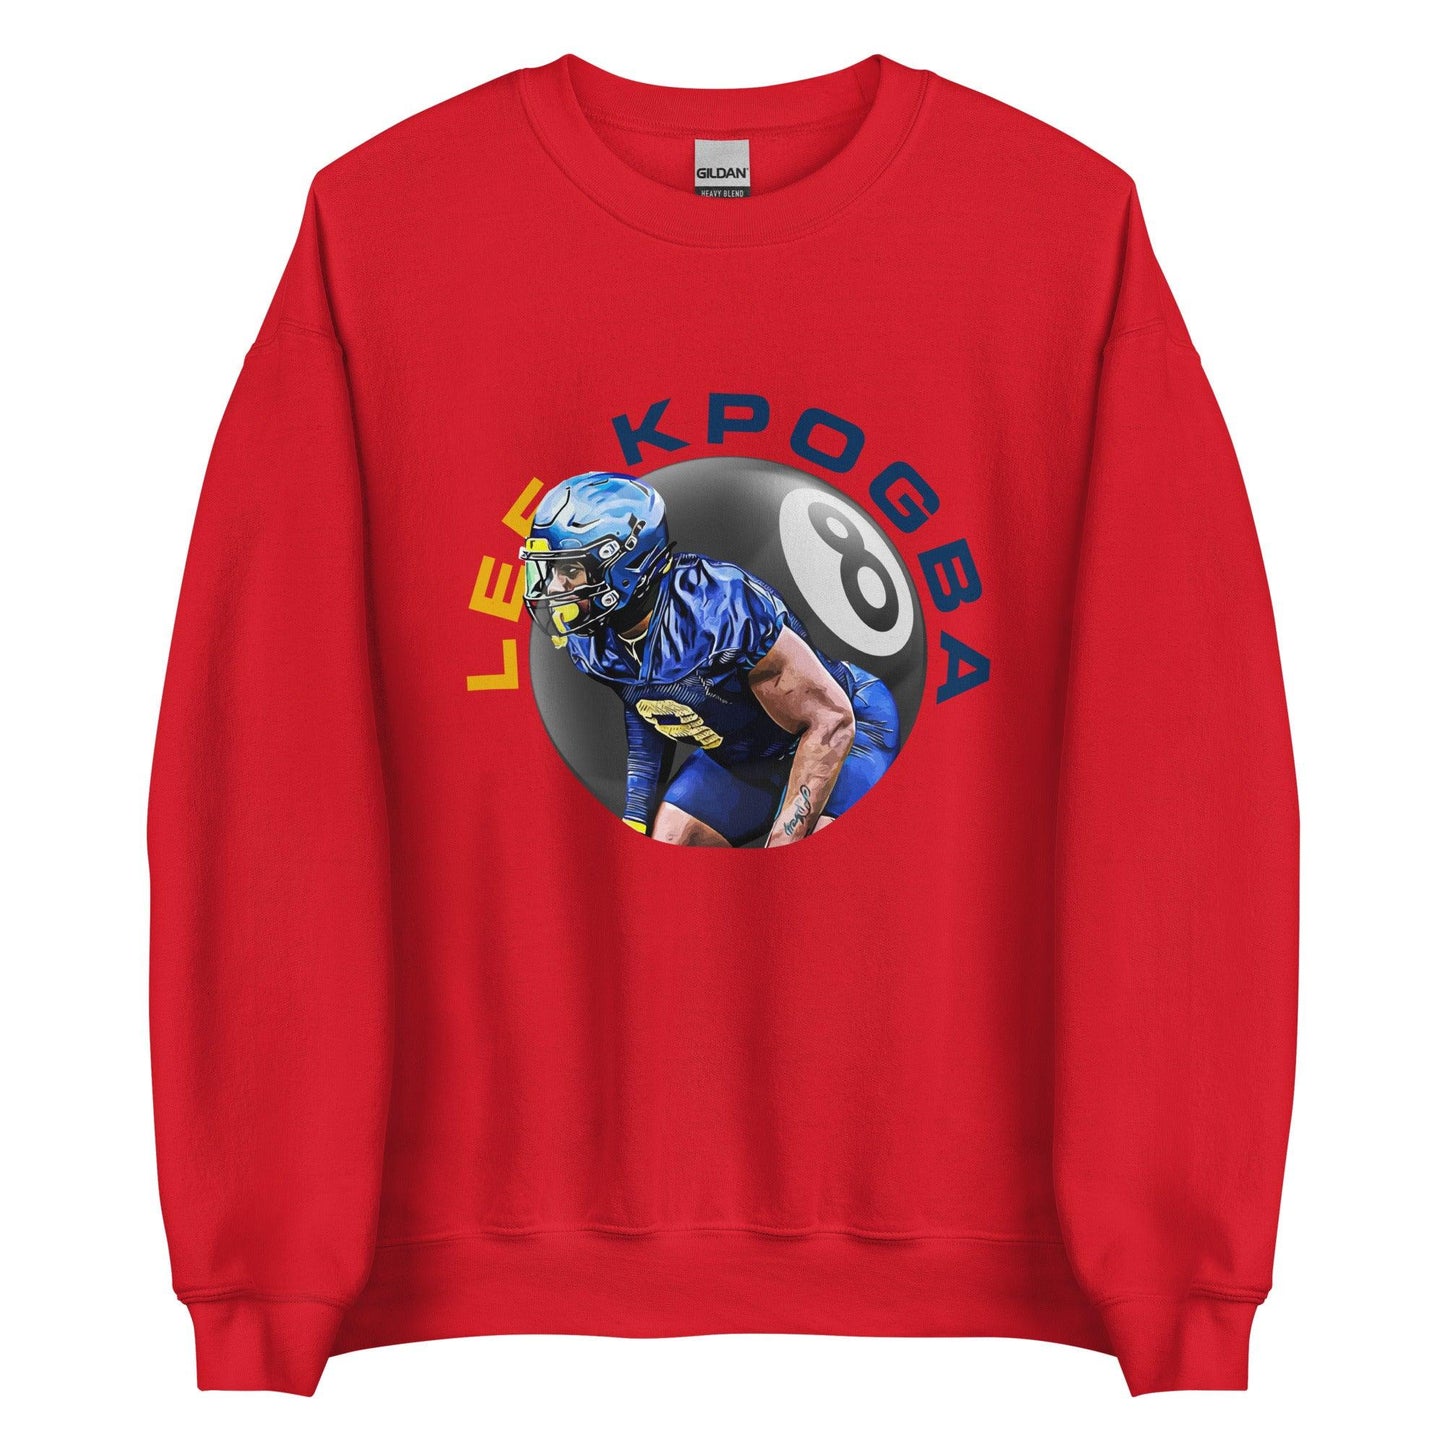 Lee Kpogba "8 Ball" Sweatshirt - Fan Arch